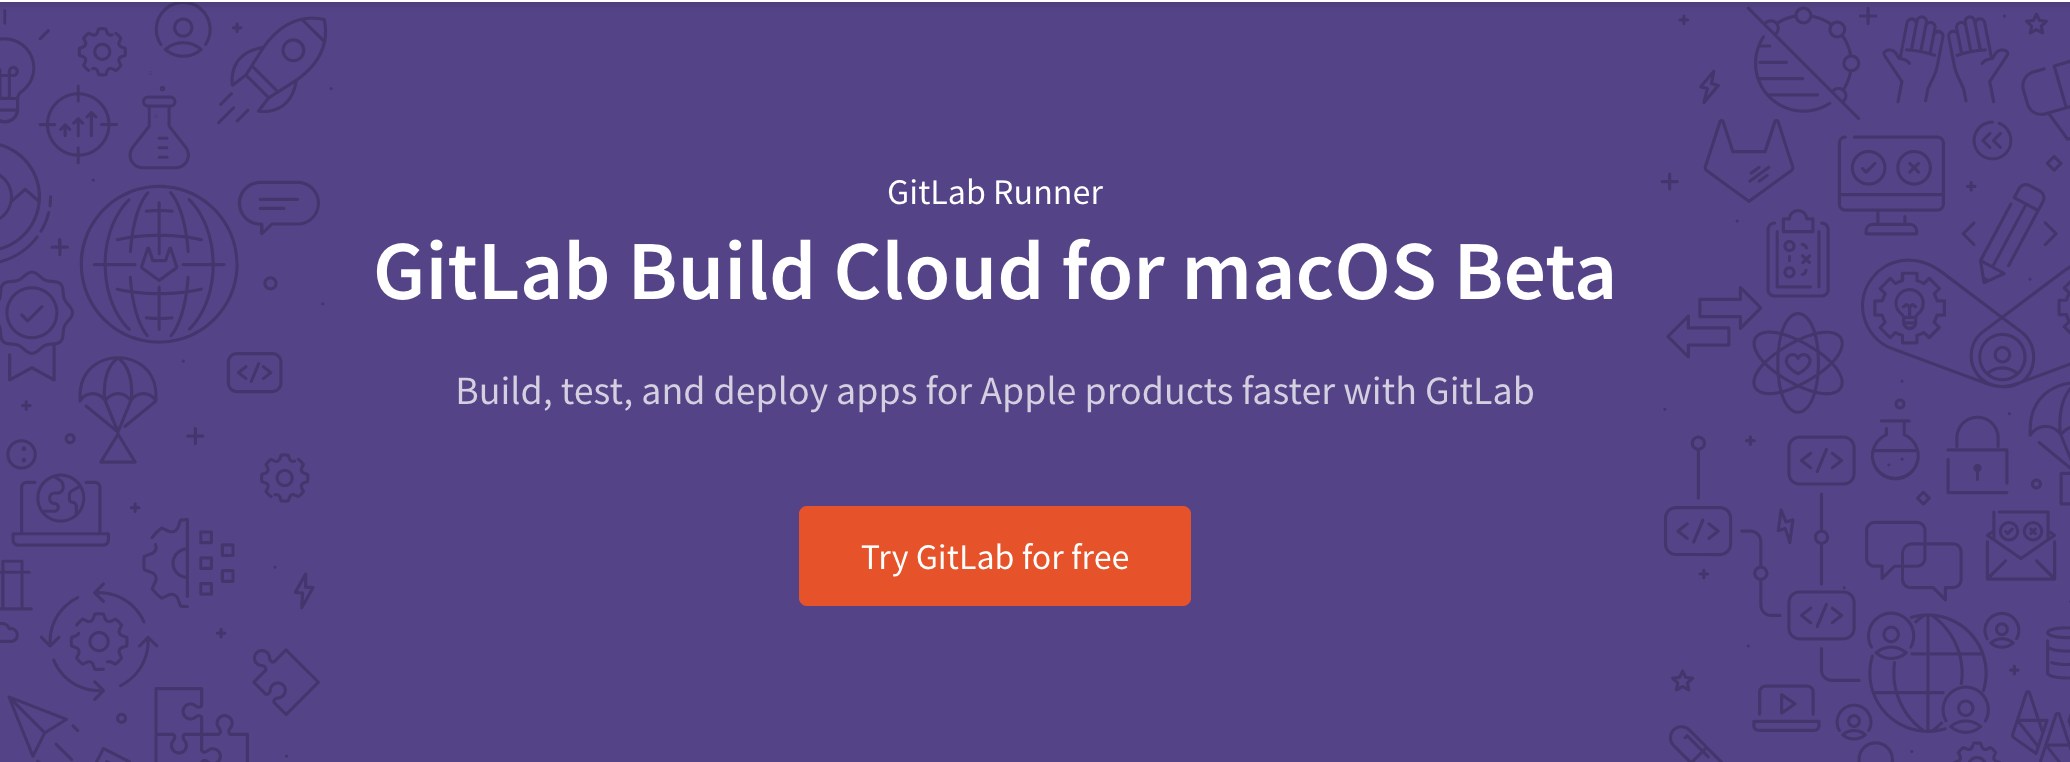 GitLab Build Cloud for macOS beta